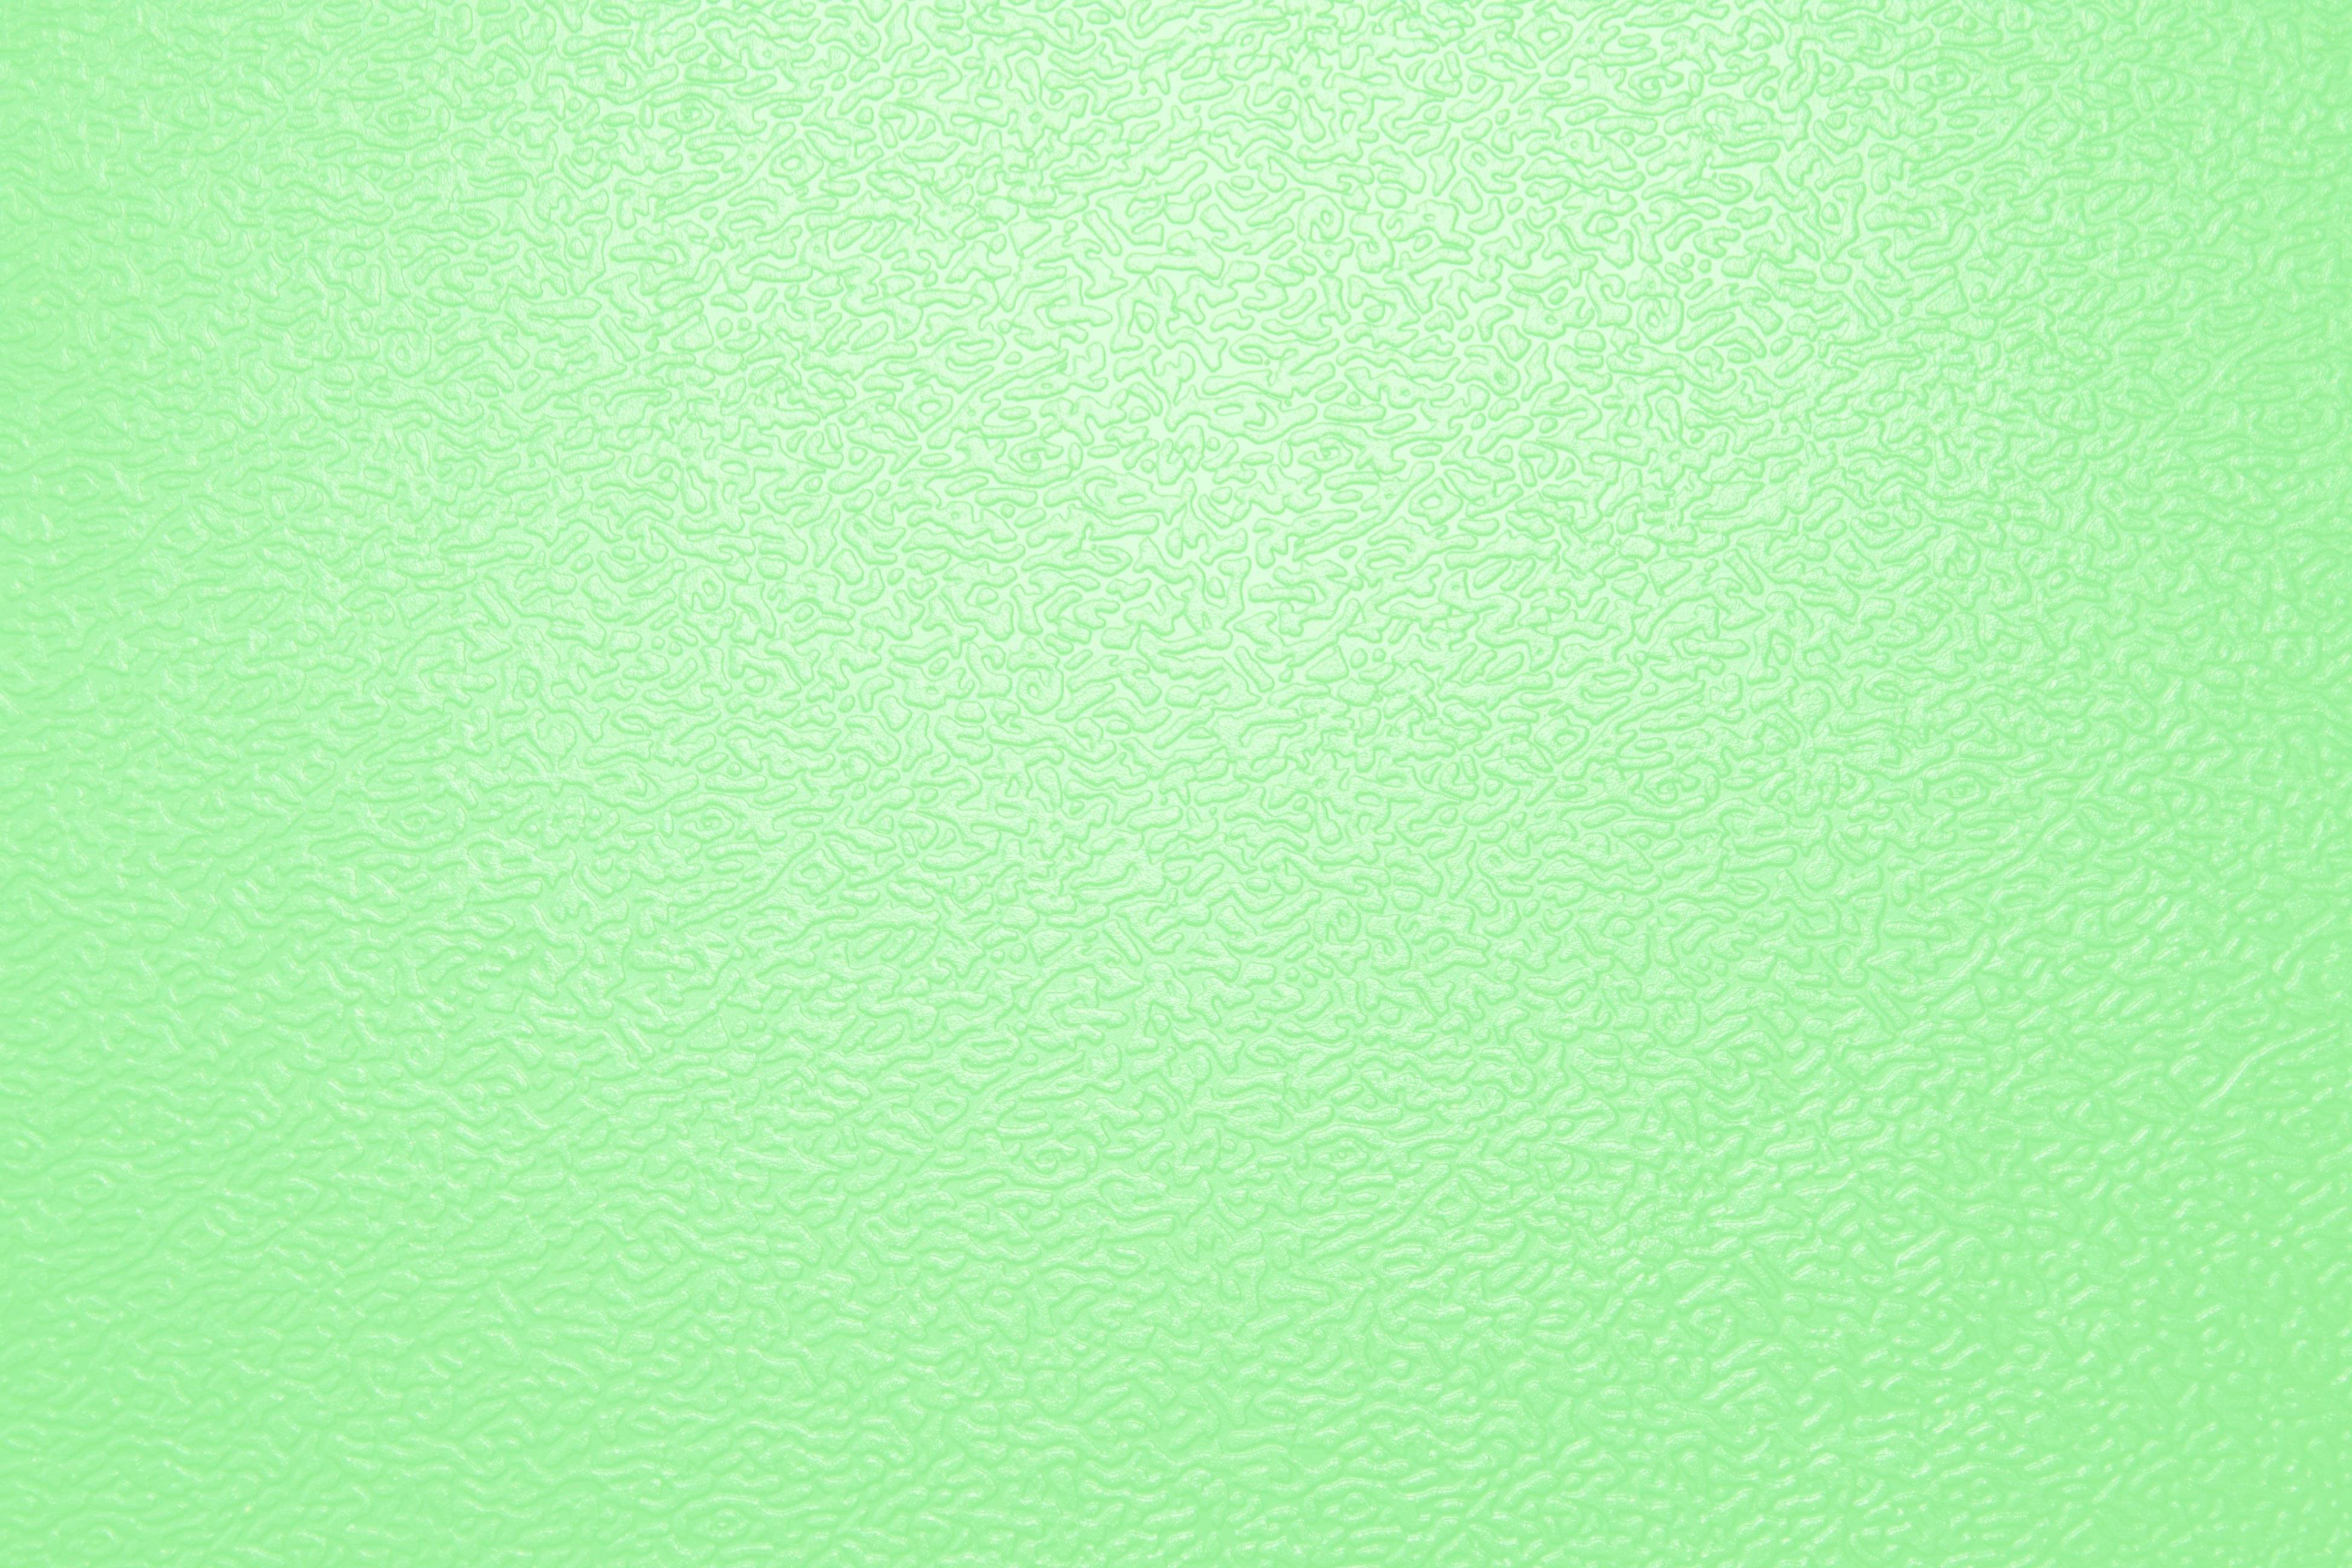 3888x2592 Tải xuống miễn phí Nền xanh nhạt [3888x2592] cho Máy tính để bàn, Di động & Máy tính bảng của bạn.  Khám phá Hình nền màu xanh lá cây nhạt.  Hình nền màu đen và xanh lá cây, Hình nền màu xanh lá cây nhạt màu xanh lá cây, Hình nền màu xanh lá cây nhạt